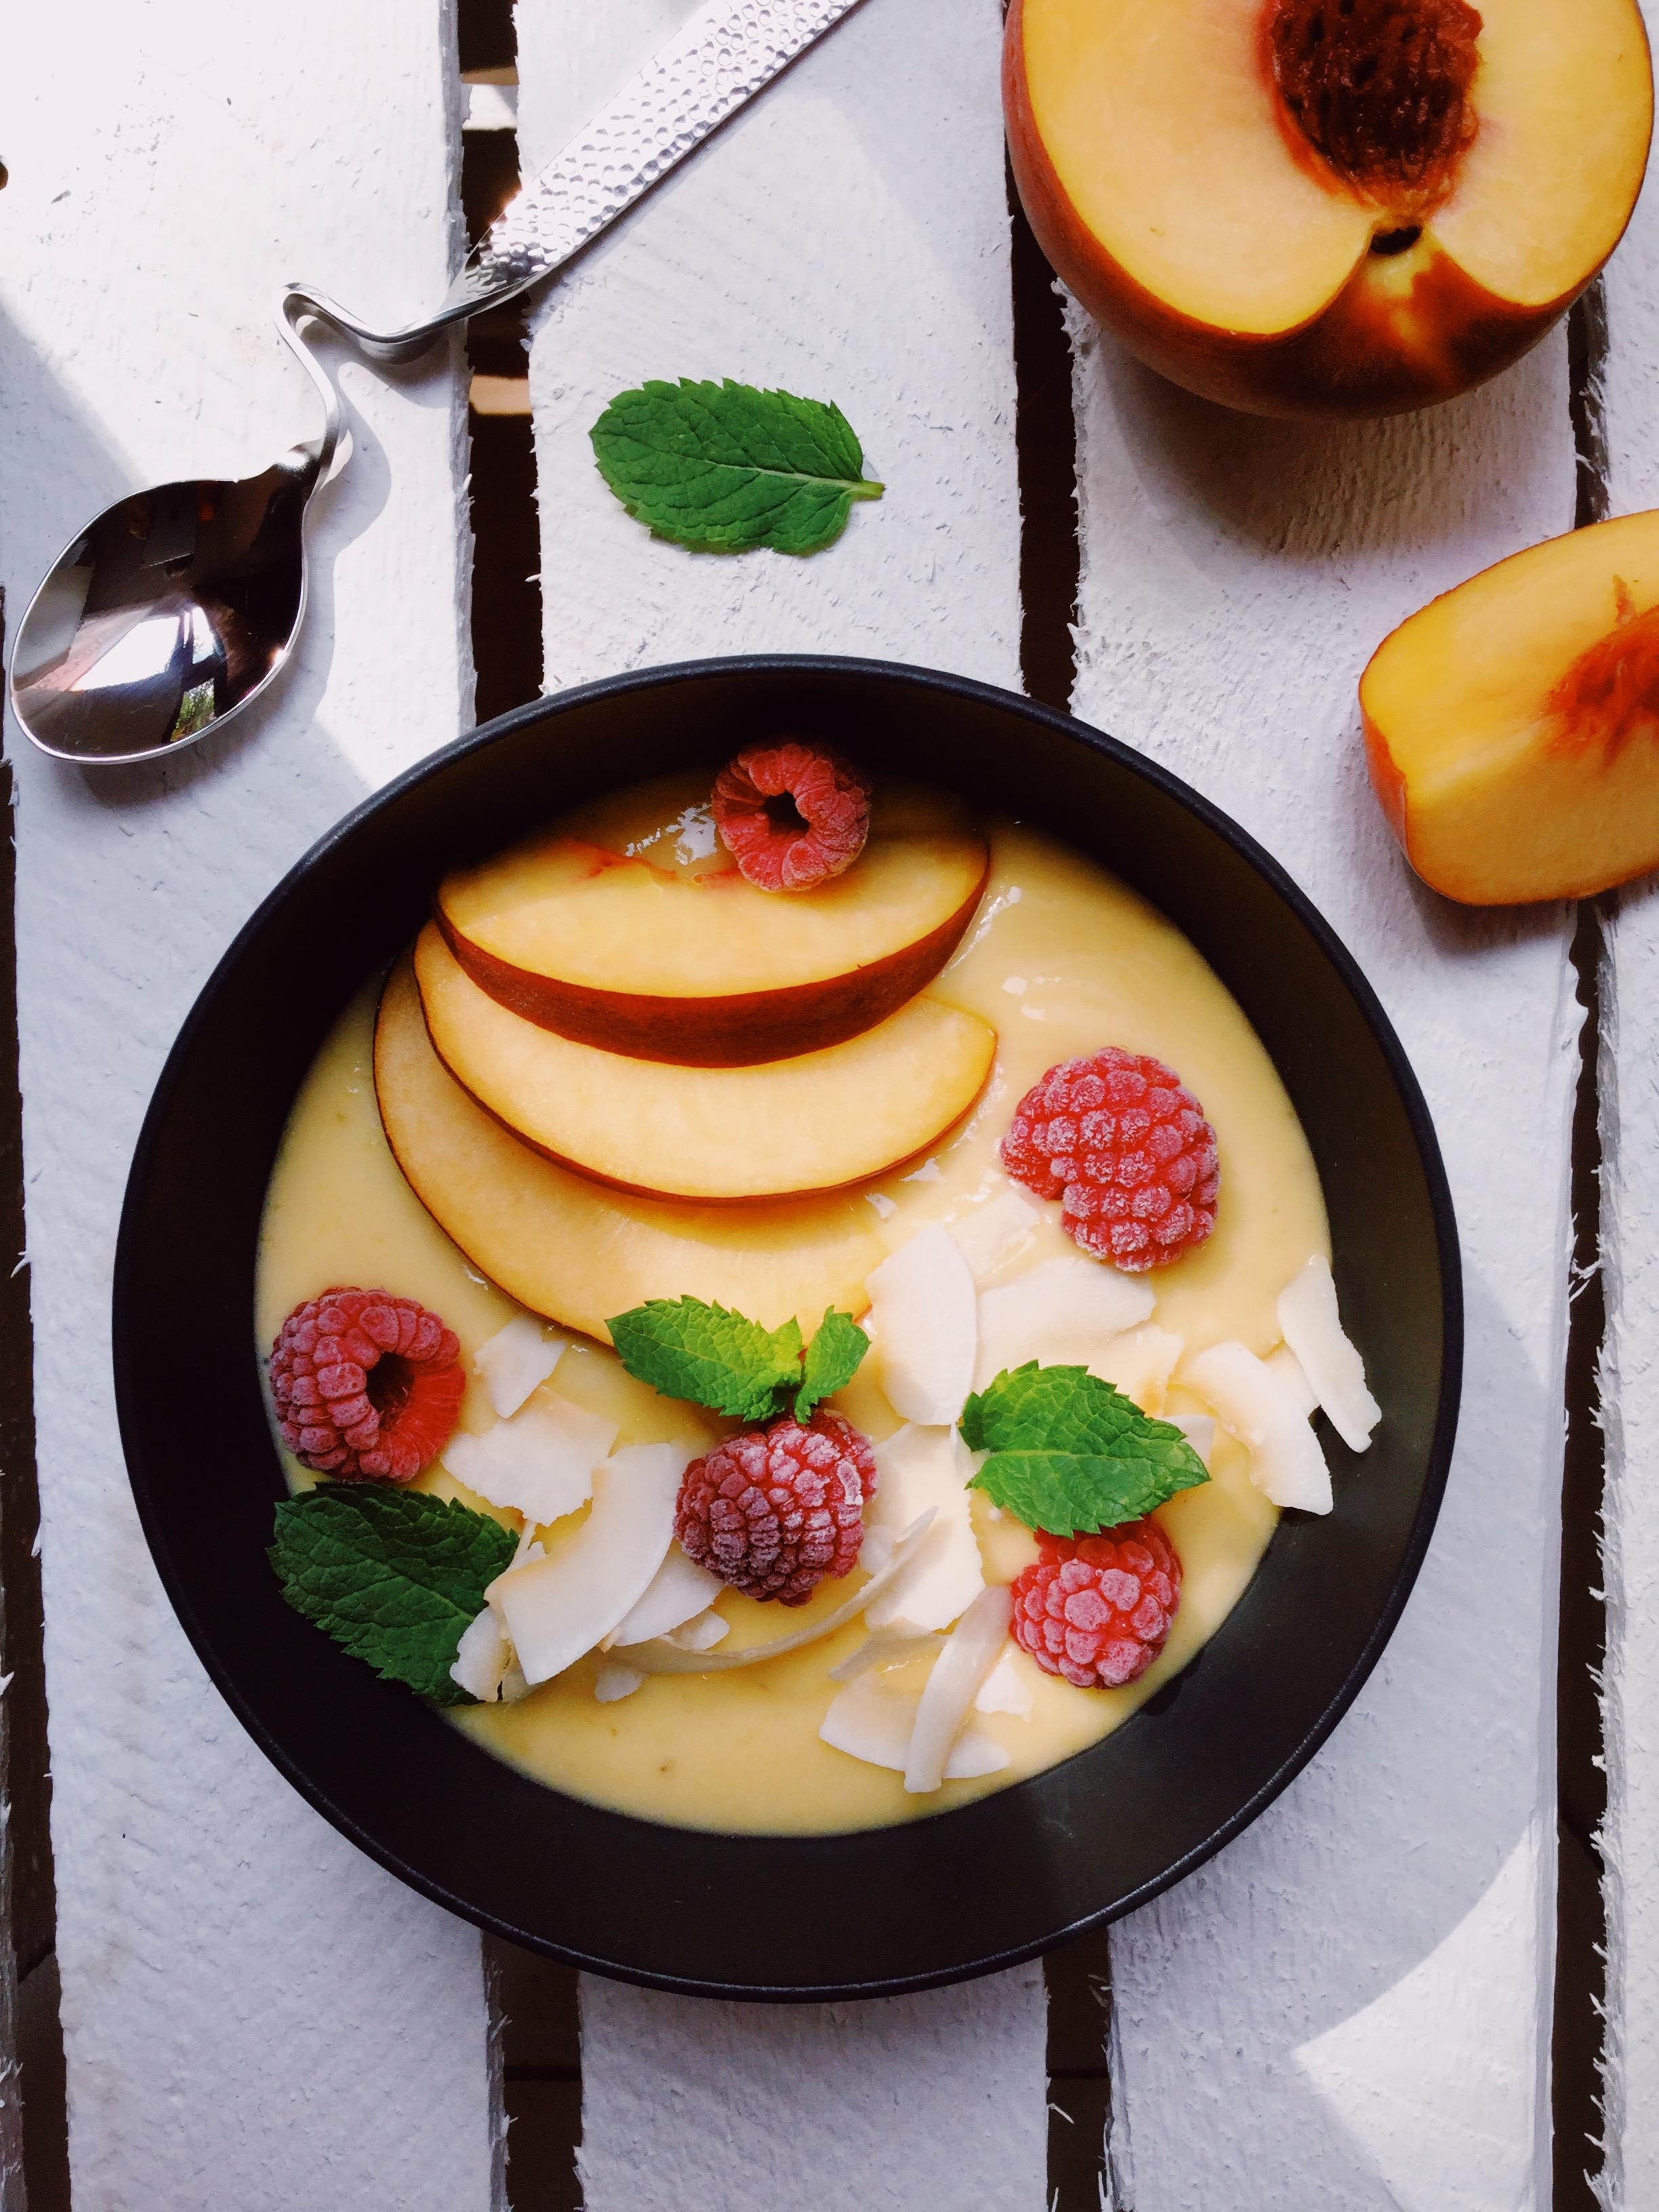 Pfirsich-Mango-Bowl 👩🏼‍🍳🌱☀️ Fruchtig frischer Start in den Tag! #foodlove #frühstück #vegan #gesund #lecker #foodblogger